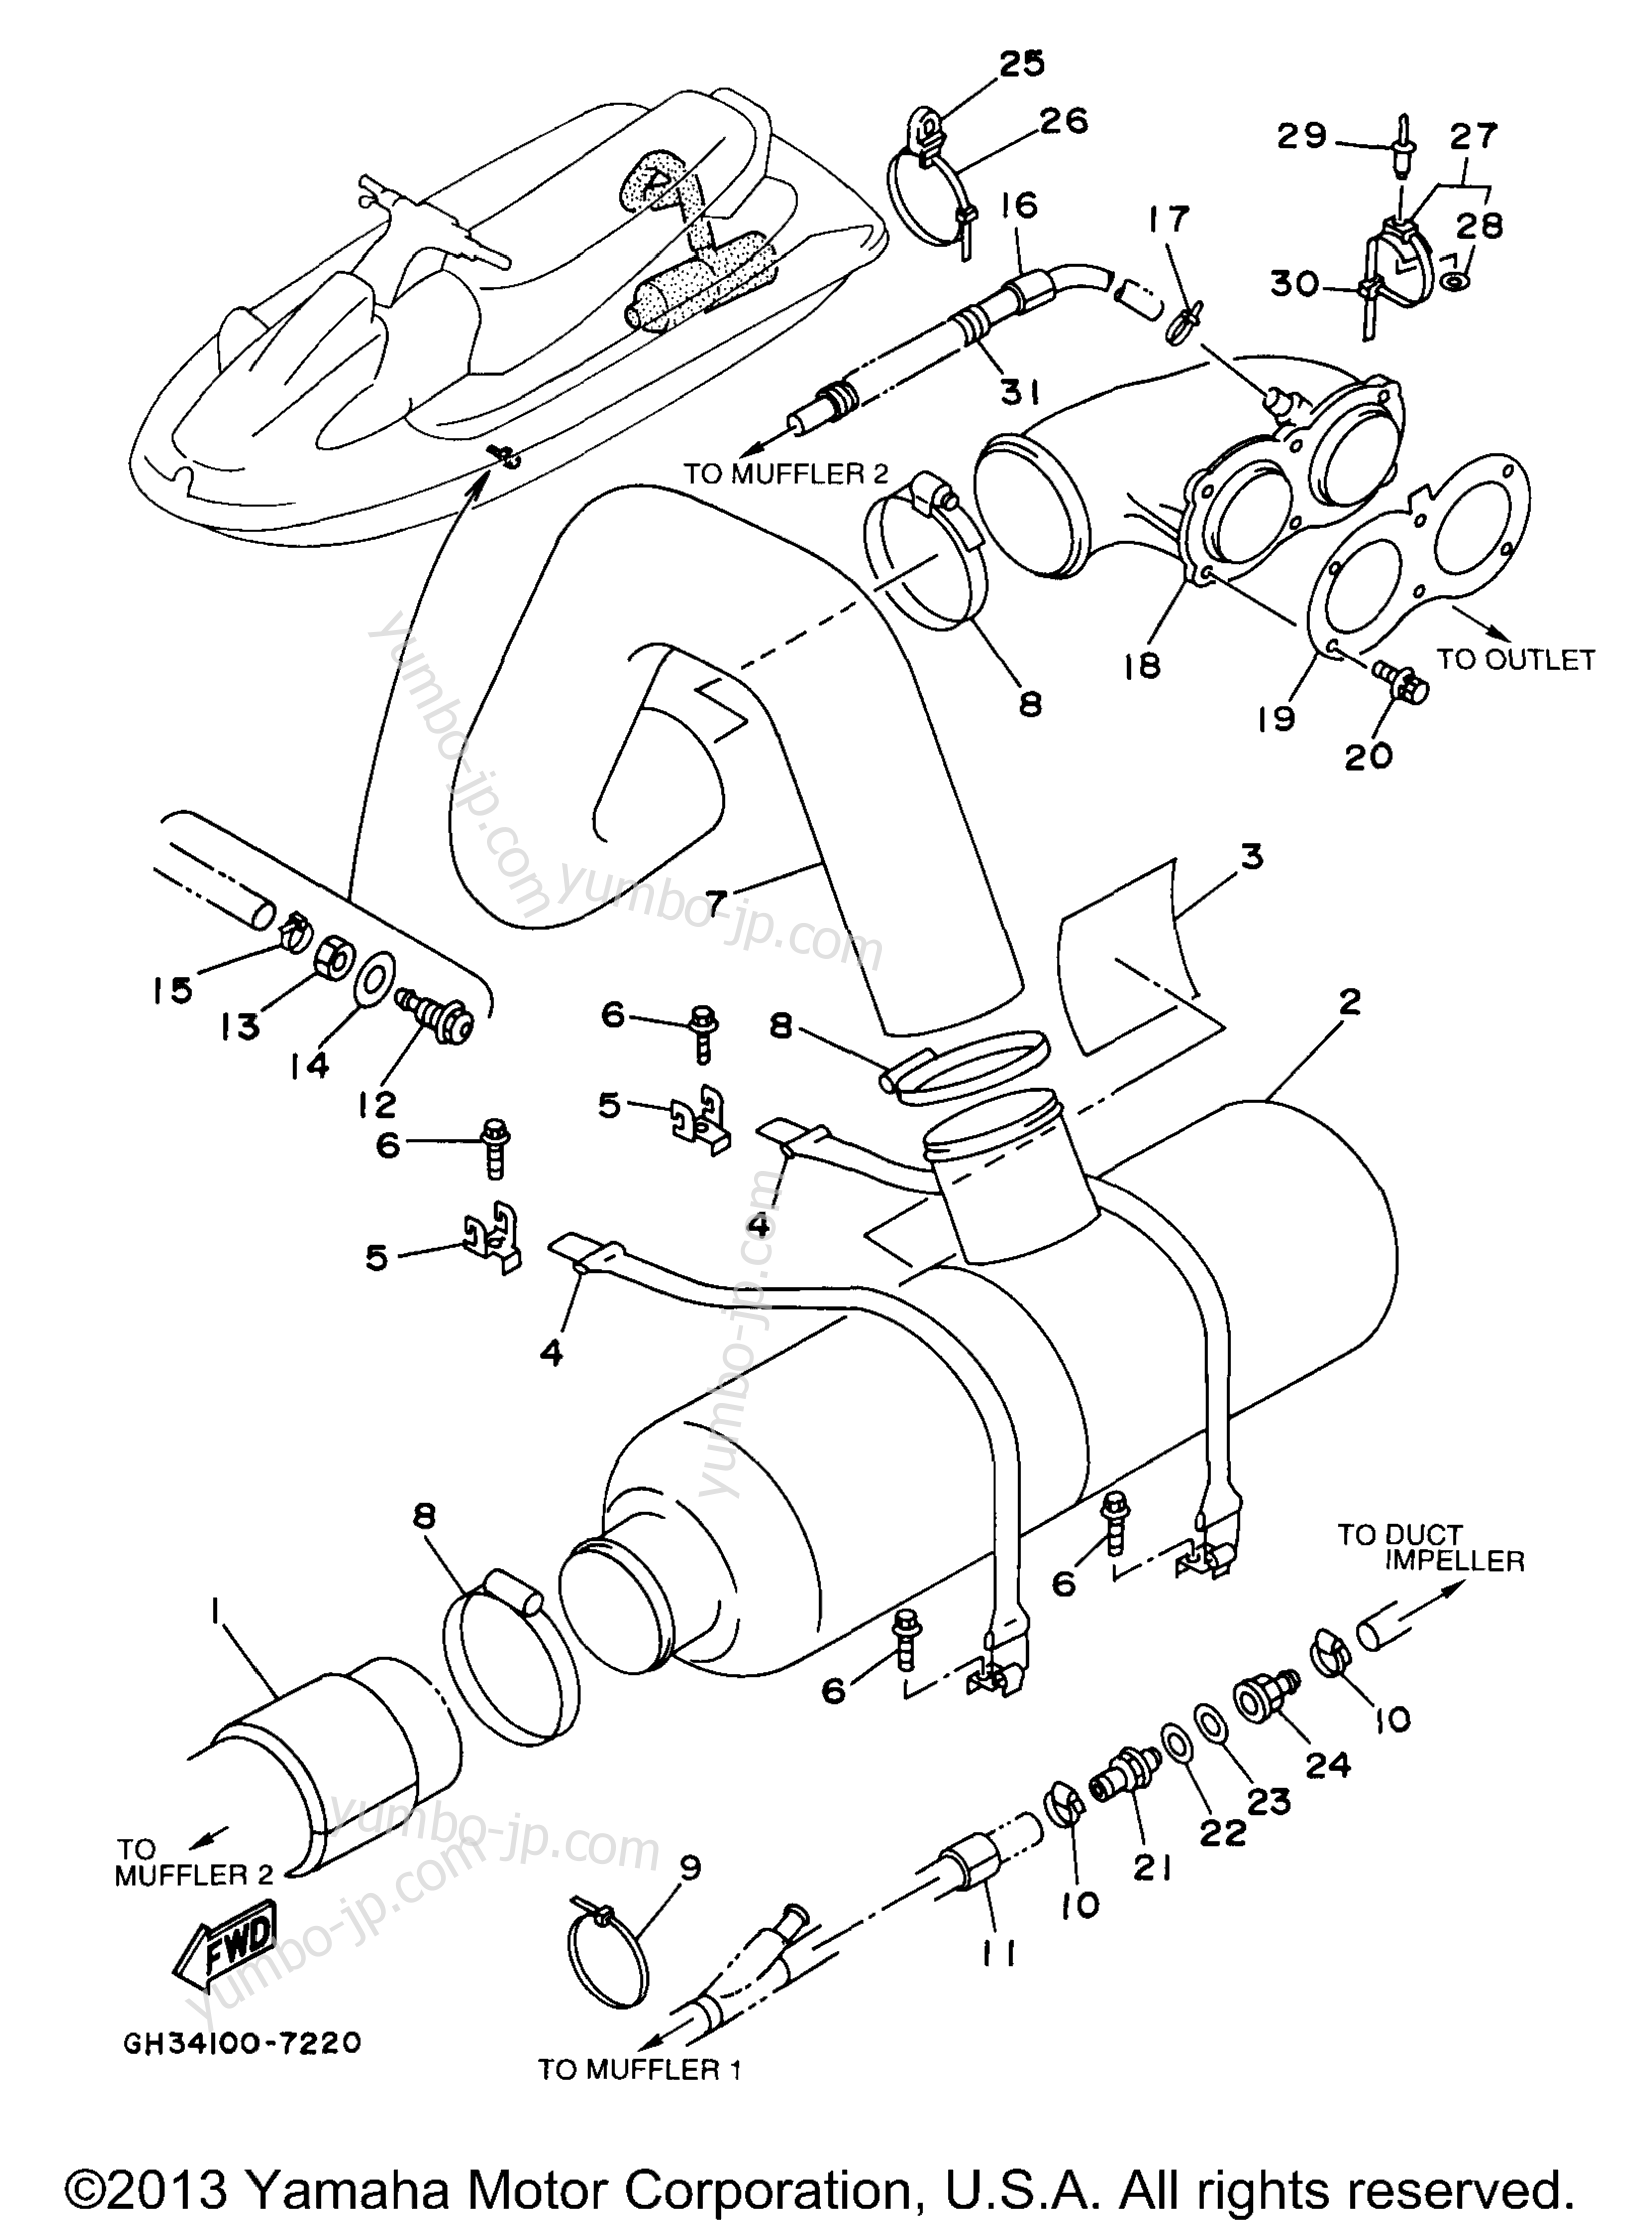 Exhaust 2 для гидроциклов YAMAHA WAVE VENTURE 1100 (WVT1100V) 1997 г.